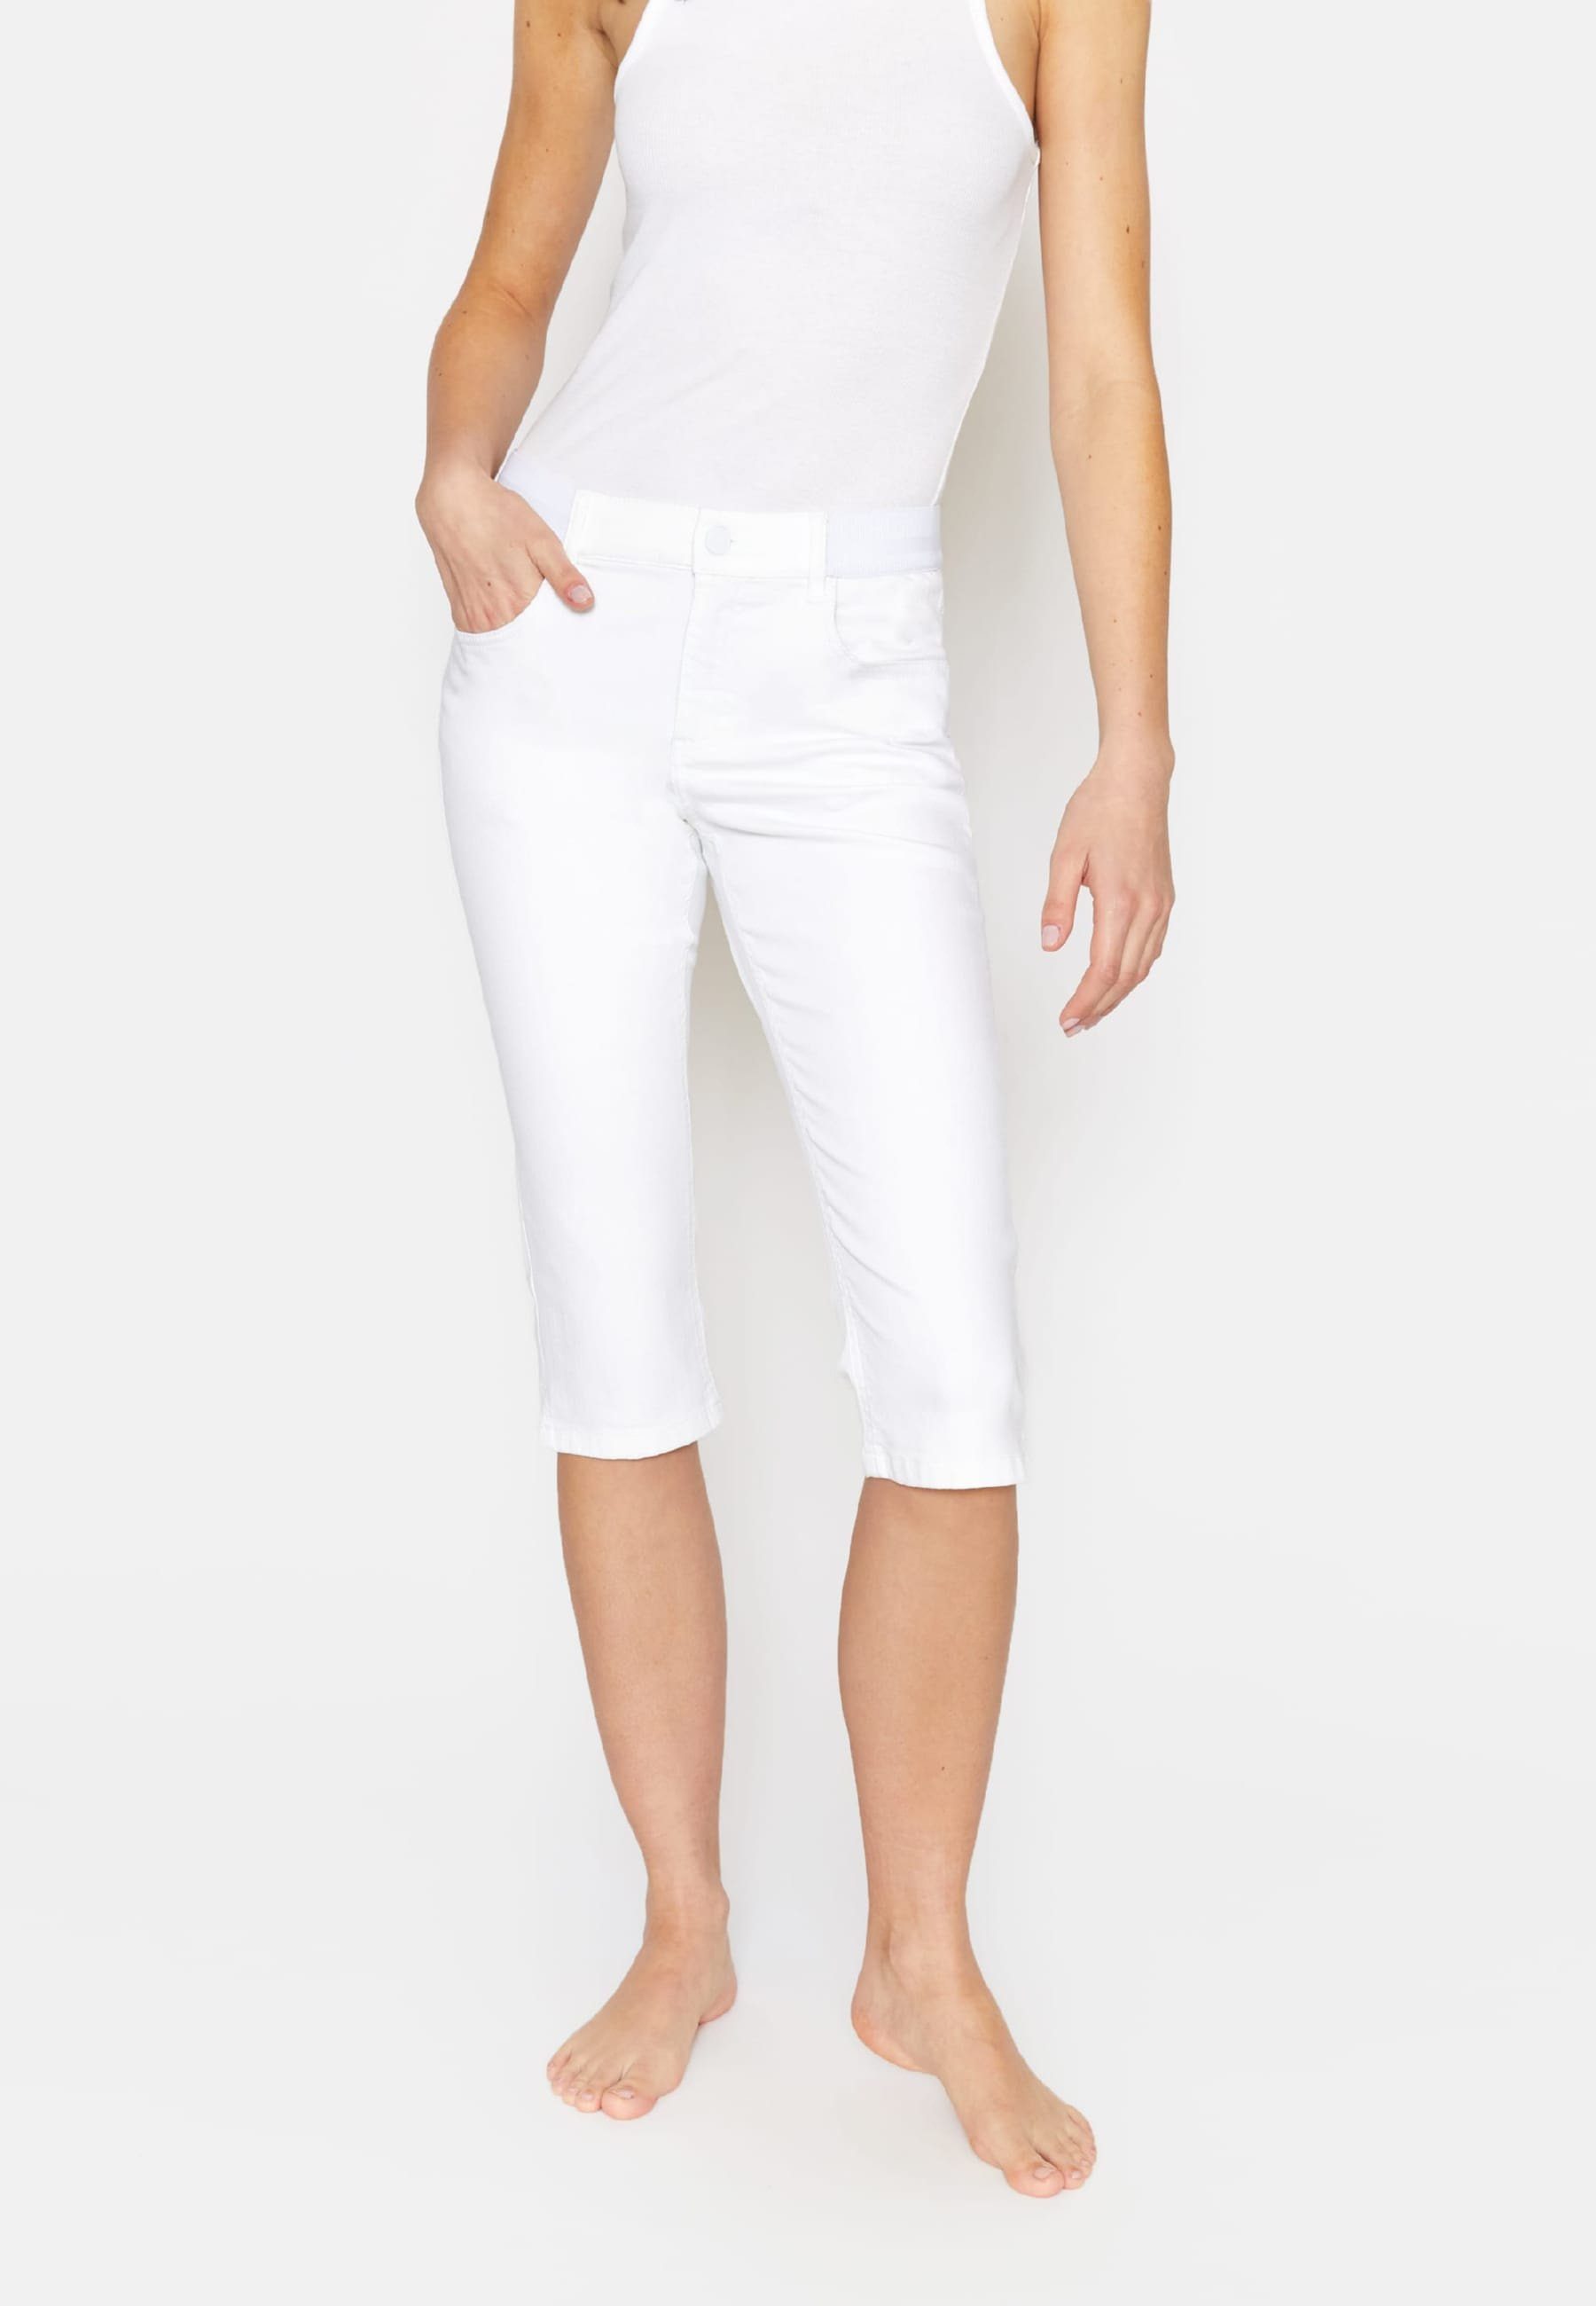 ANGELS Dehnbund-Jeans Kurze Jeans Onesize Capri mit klassischem Design weiß